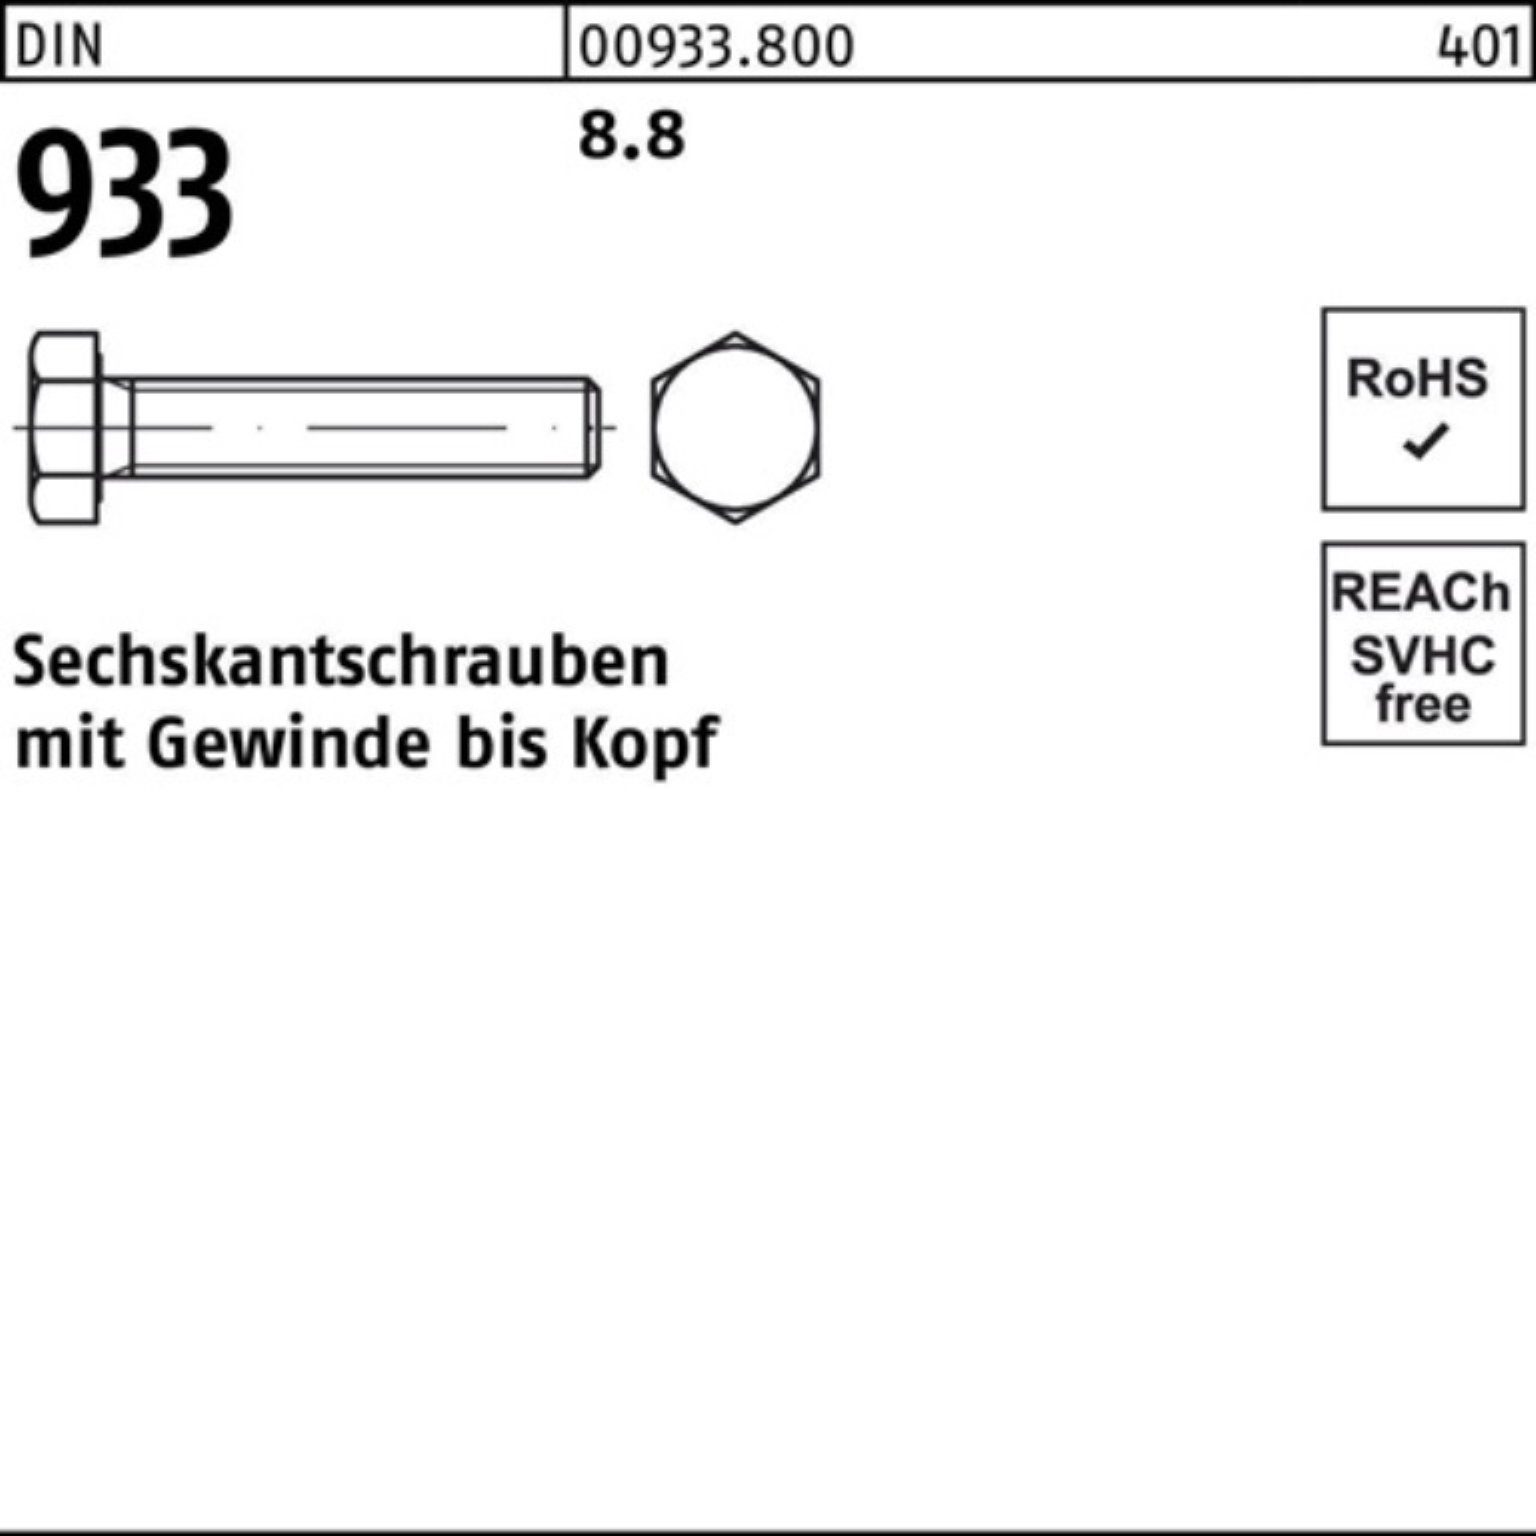 Sechskantschraube 933 100er DIN 10 Pack Reyher Stück M27x DIN VG 8.8 933 Sechskantschraube 85